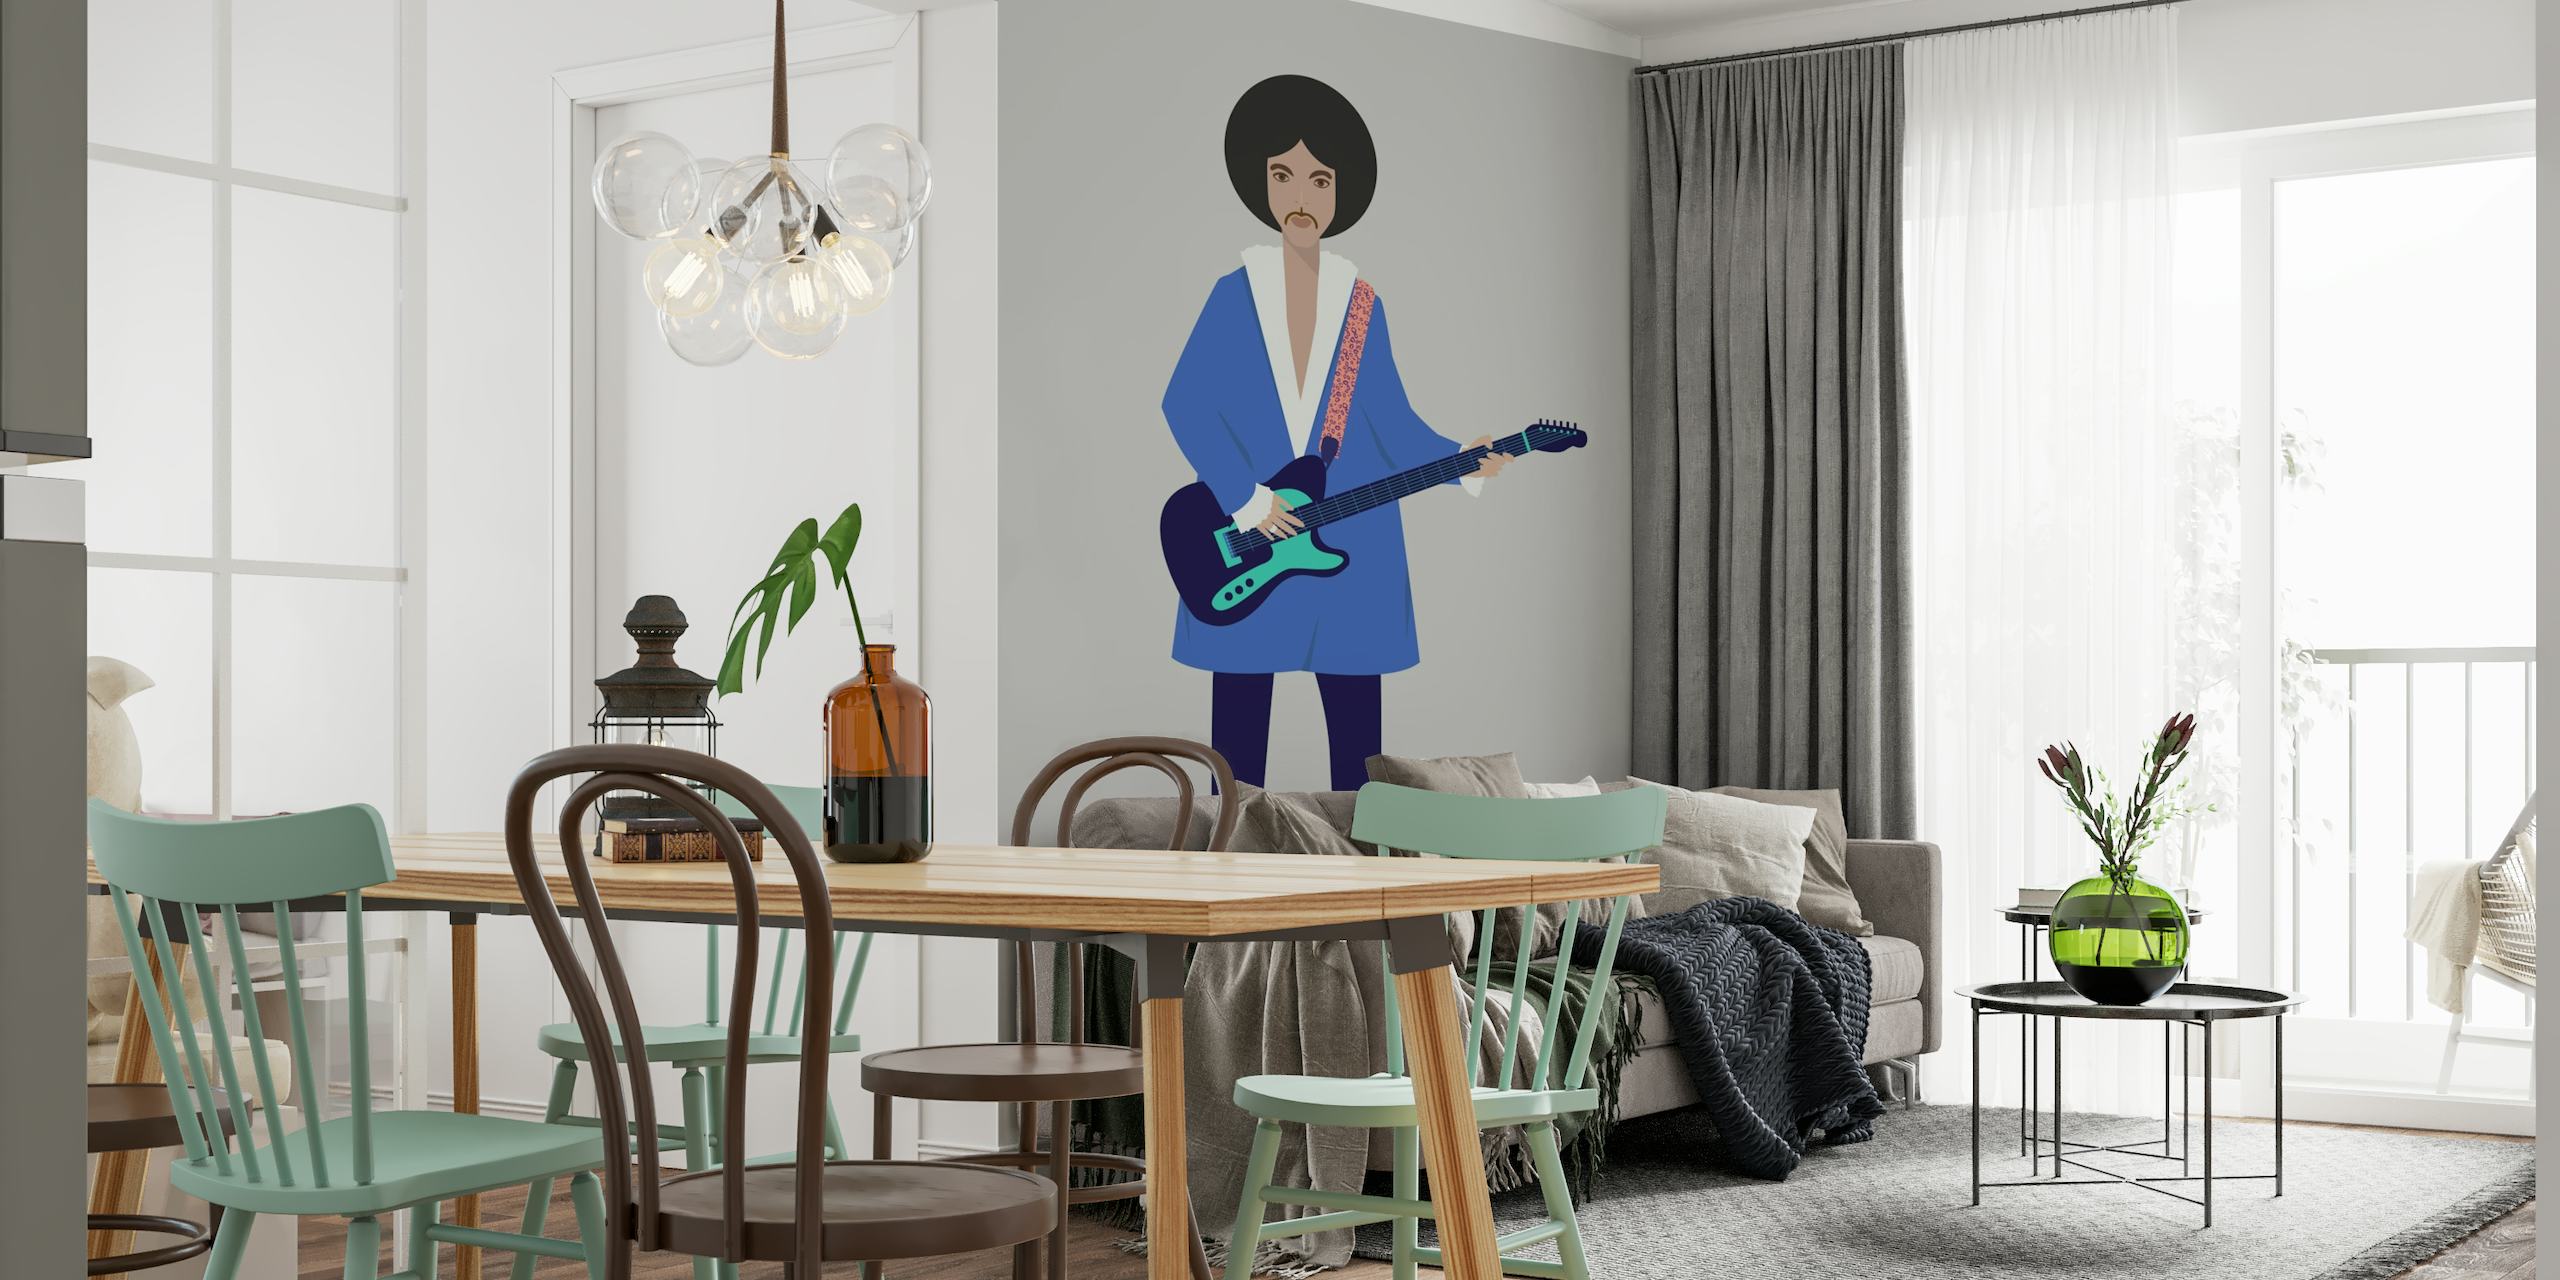 Mural de parede ilustrativo de uma pessoa com uma guitarra, apresentando um design artístico moderno